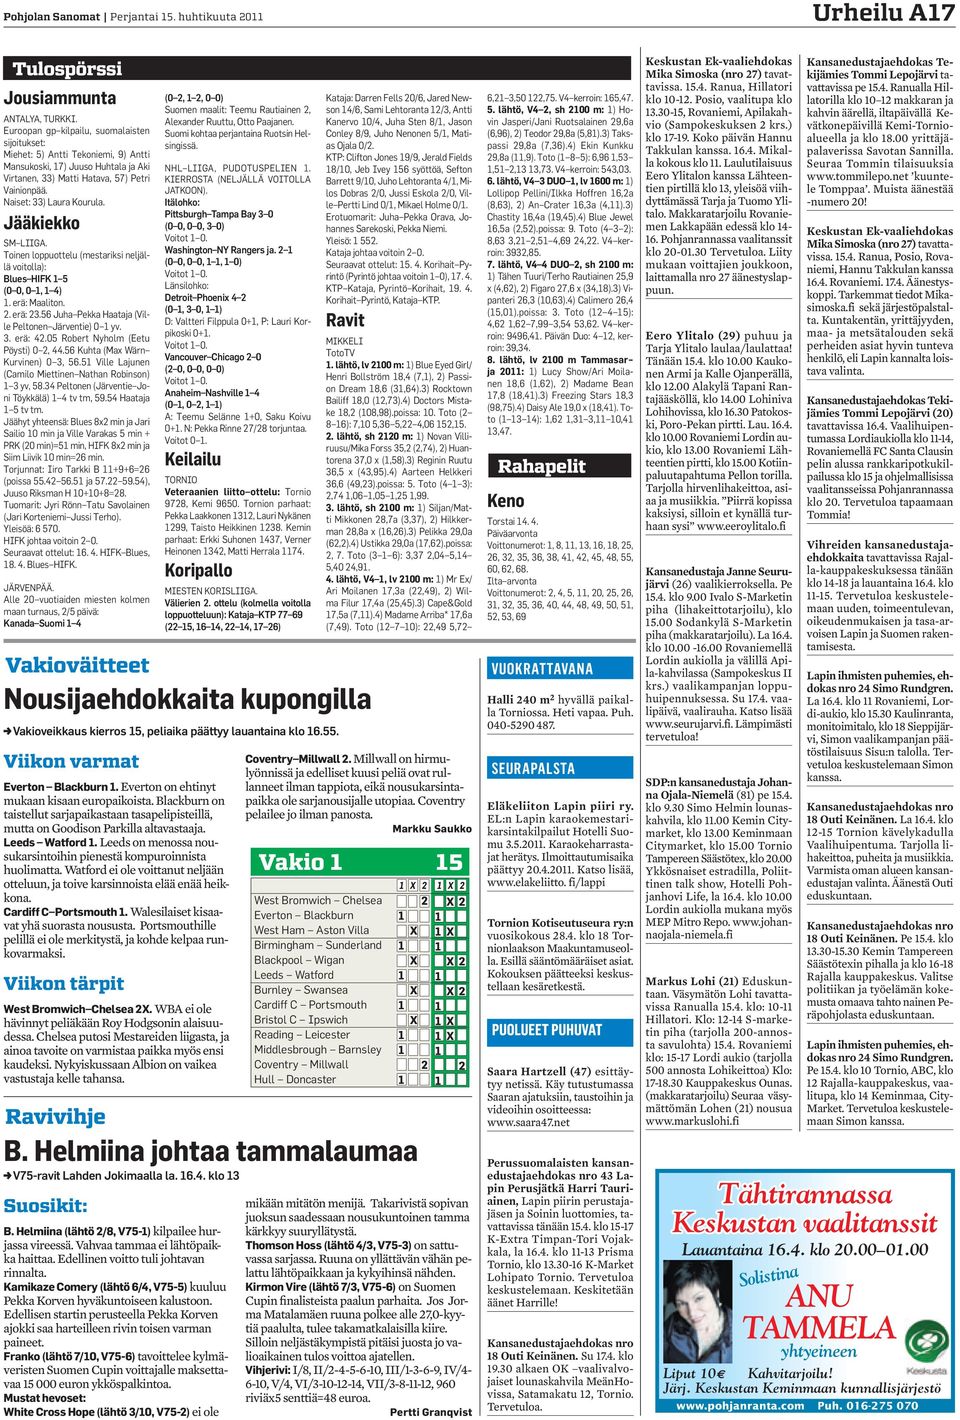 Jääkiekko SM LIIGA. Toinen loppuottelu (mestariksi neljällä voitolla): Blues HIFK 1 5 (0 0, 0 1, 1 4) 1. erä: Maaliton. 2. erä: 2.5 Juha Pekka Haataja (Ville Peltonen Järventie) 0 1 yv.. erä: 42.